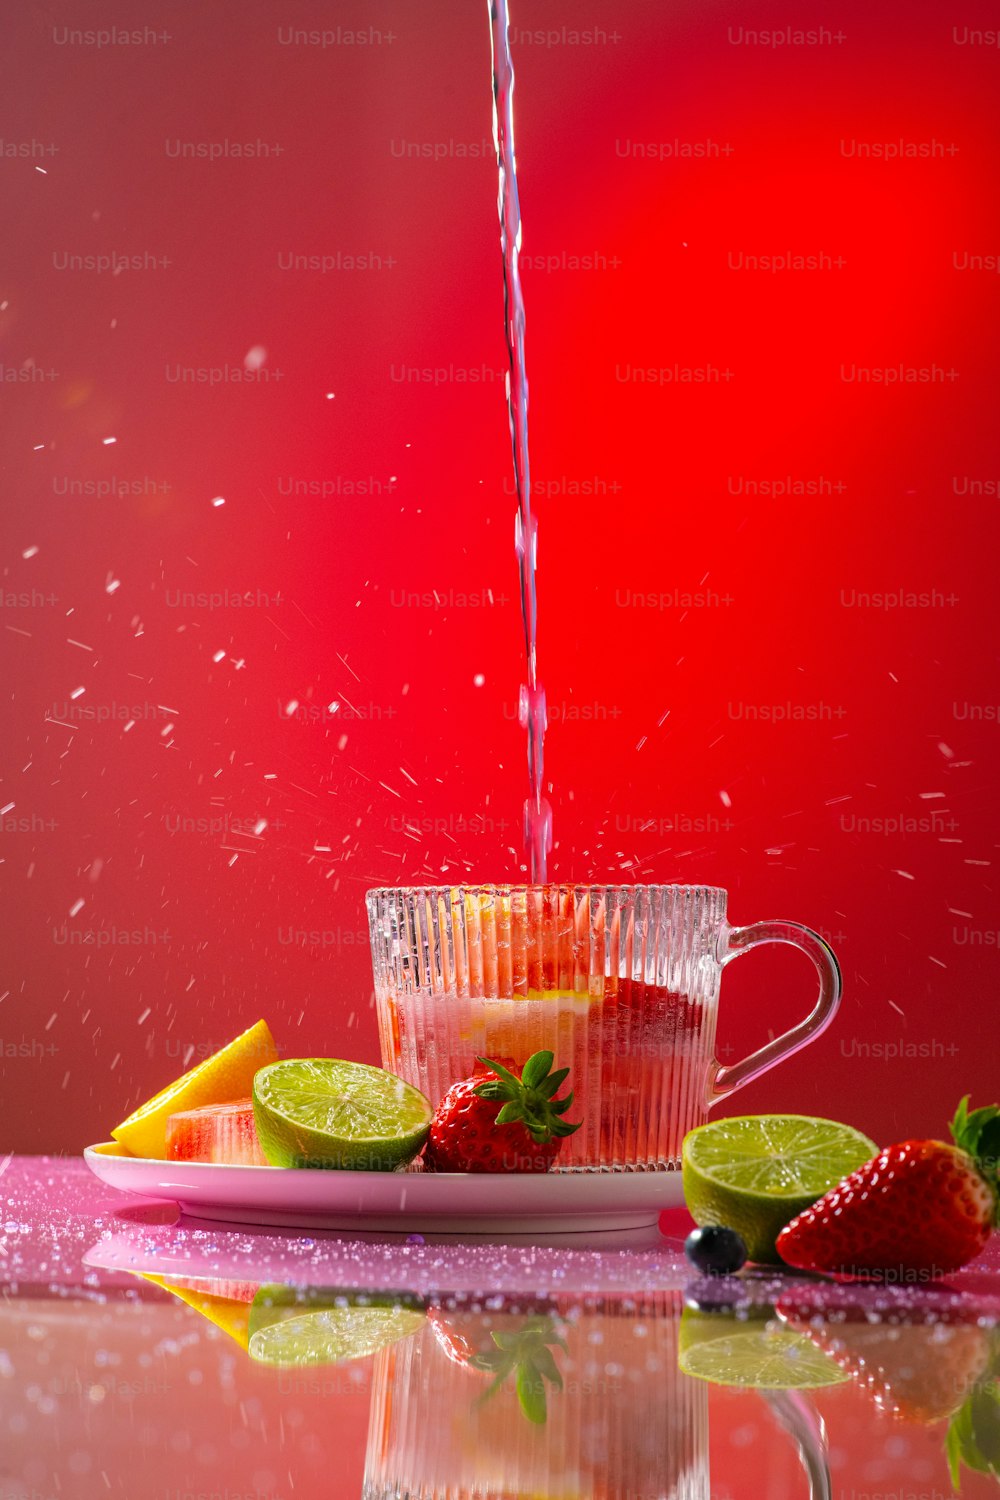 una jarra de agua vertiéndose en una taza llena de fruta